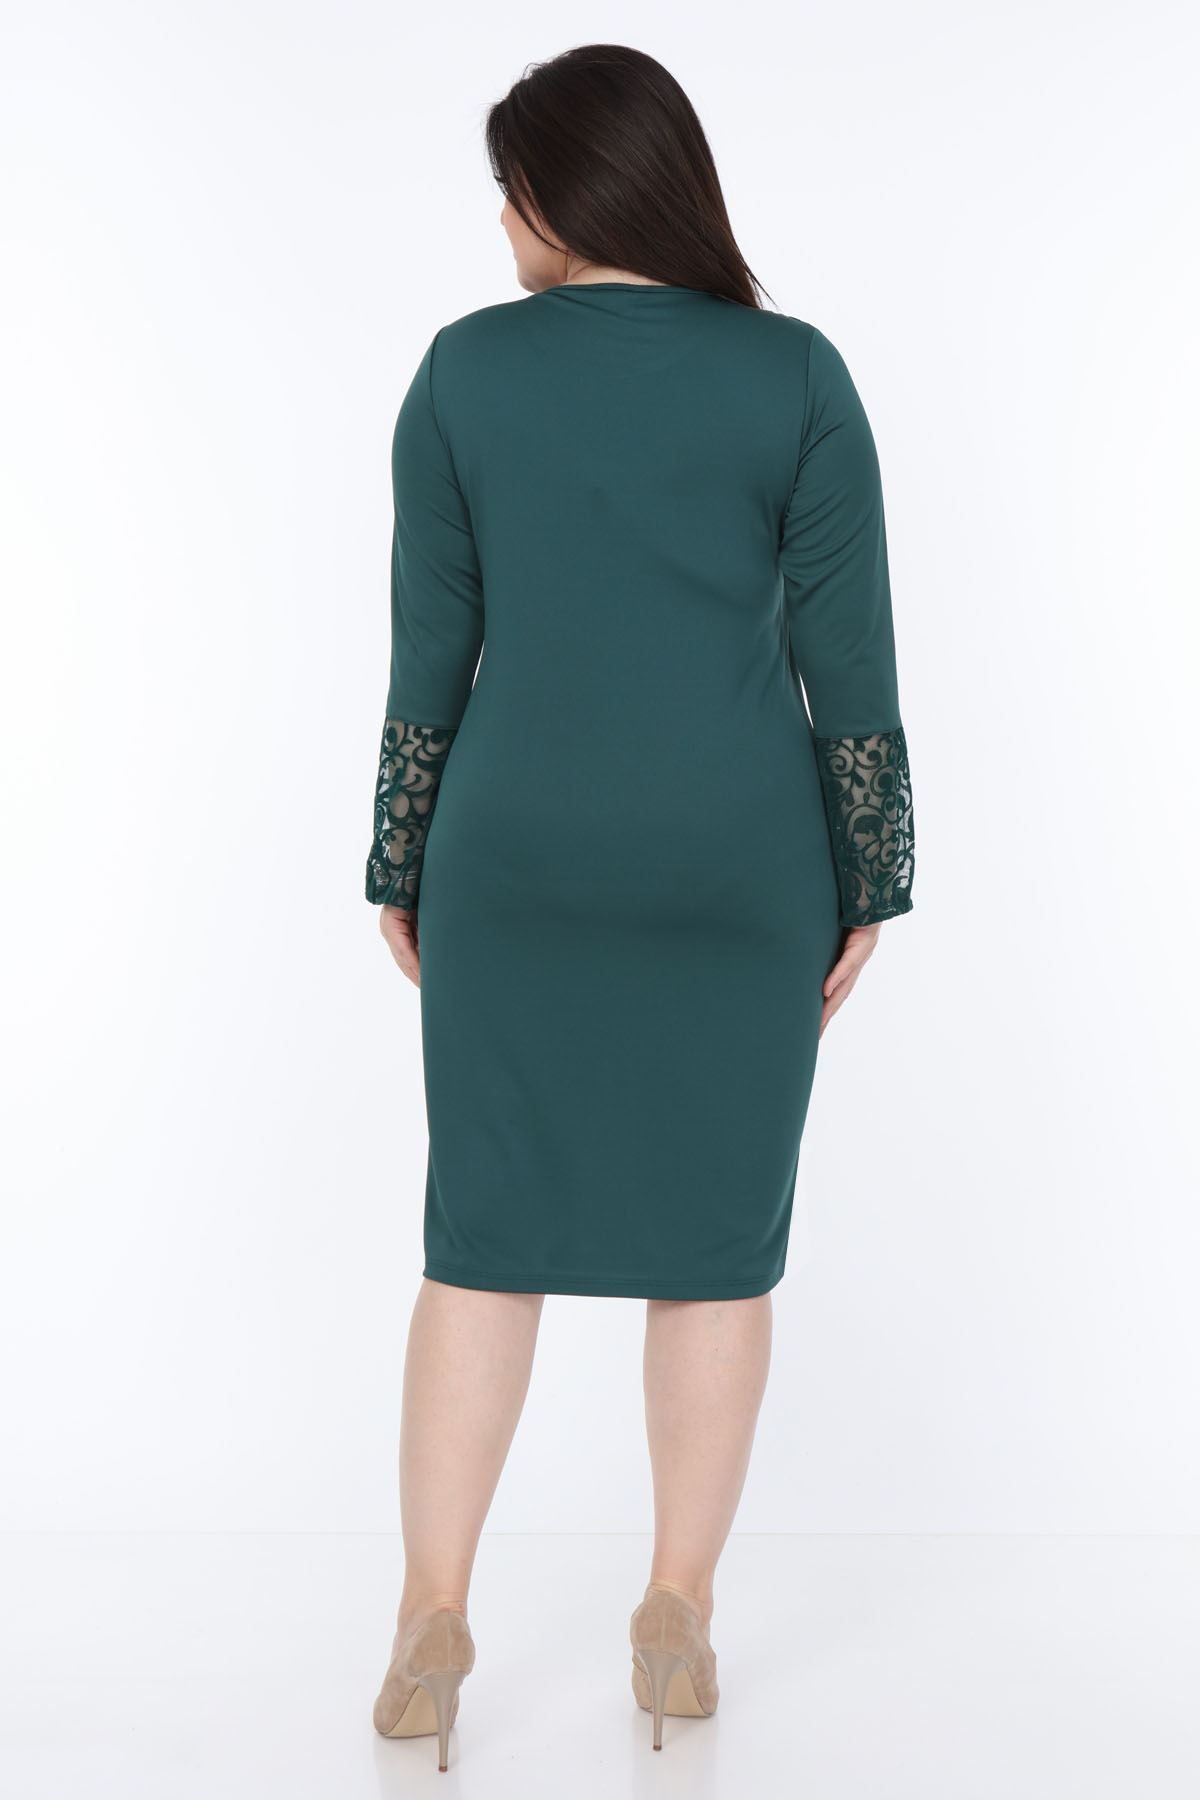 Yeşil İspanyol Kol Elbise 30Y-1050